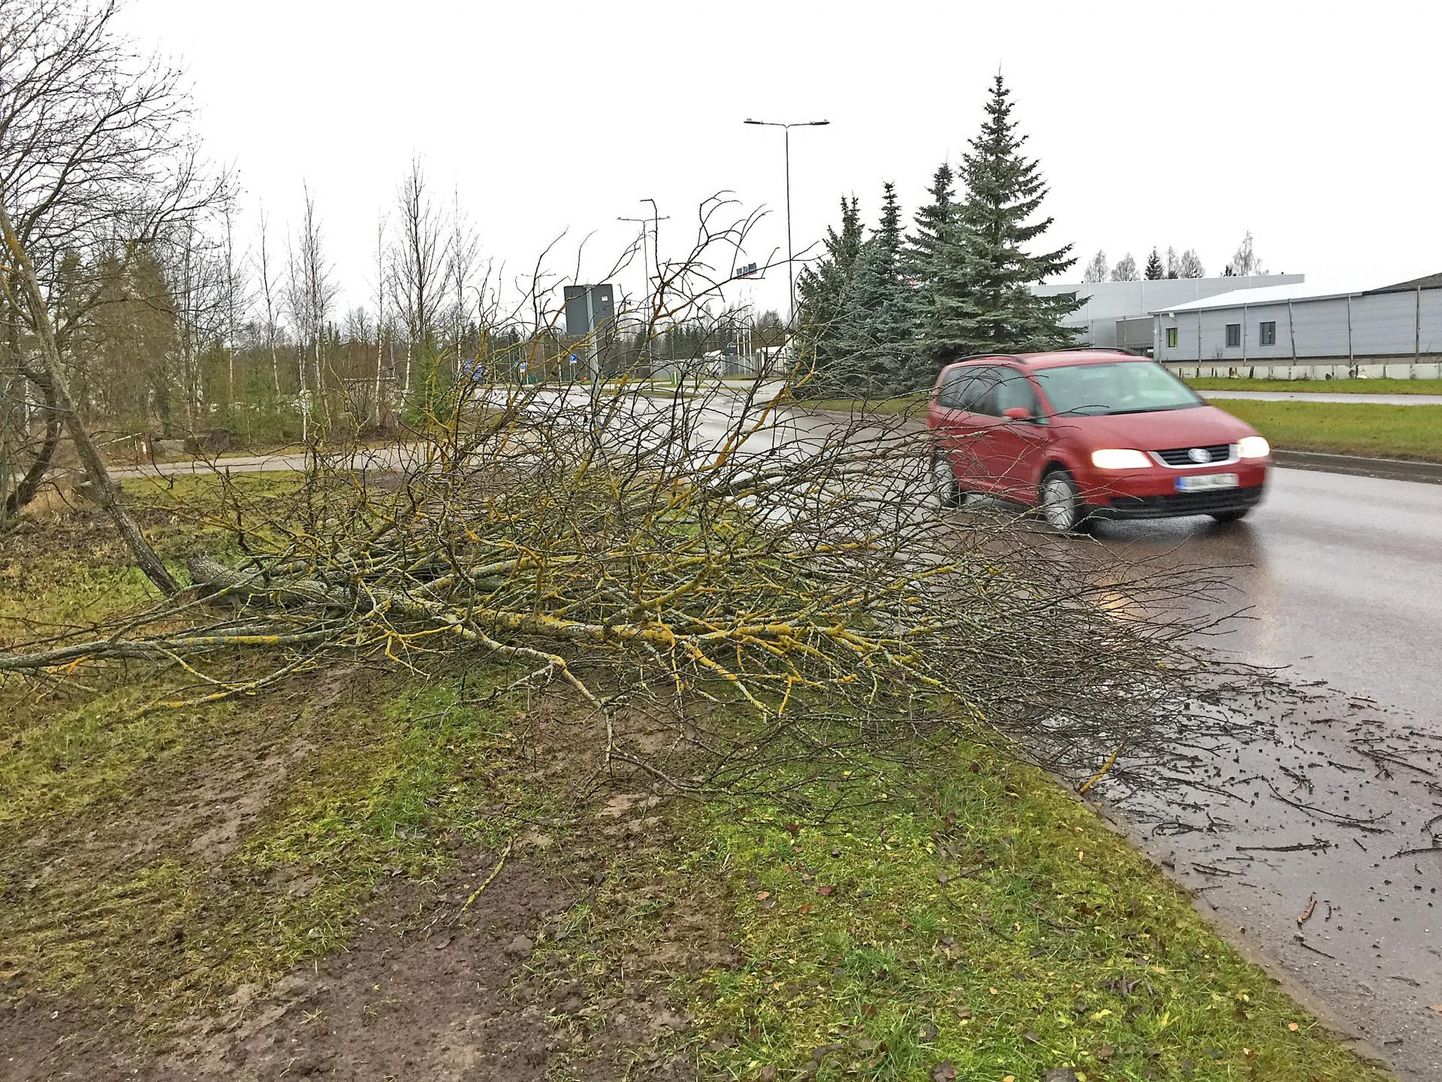 Tugeva tuule tõttu kukkus puu teele. Foto on illustratiivne.